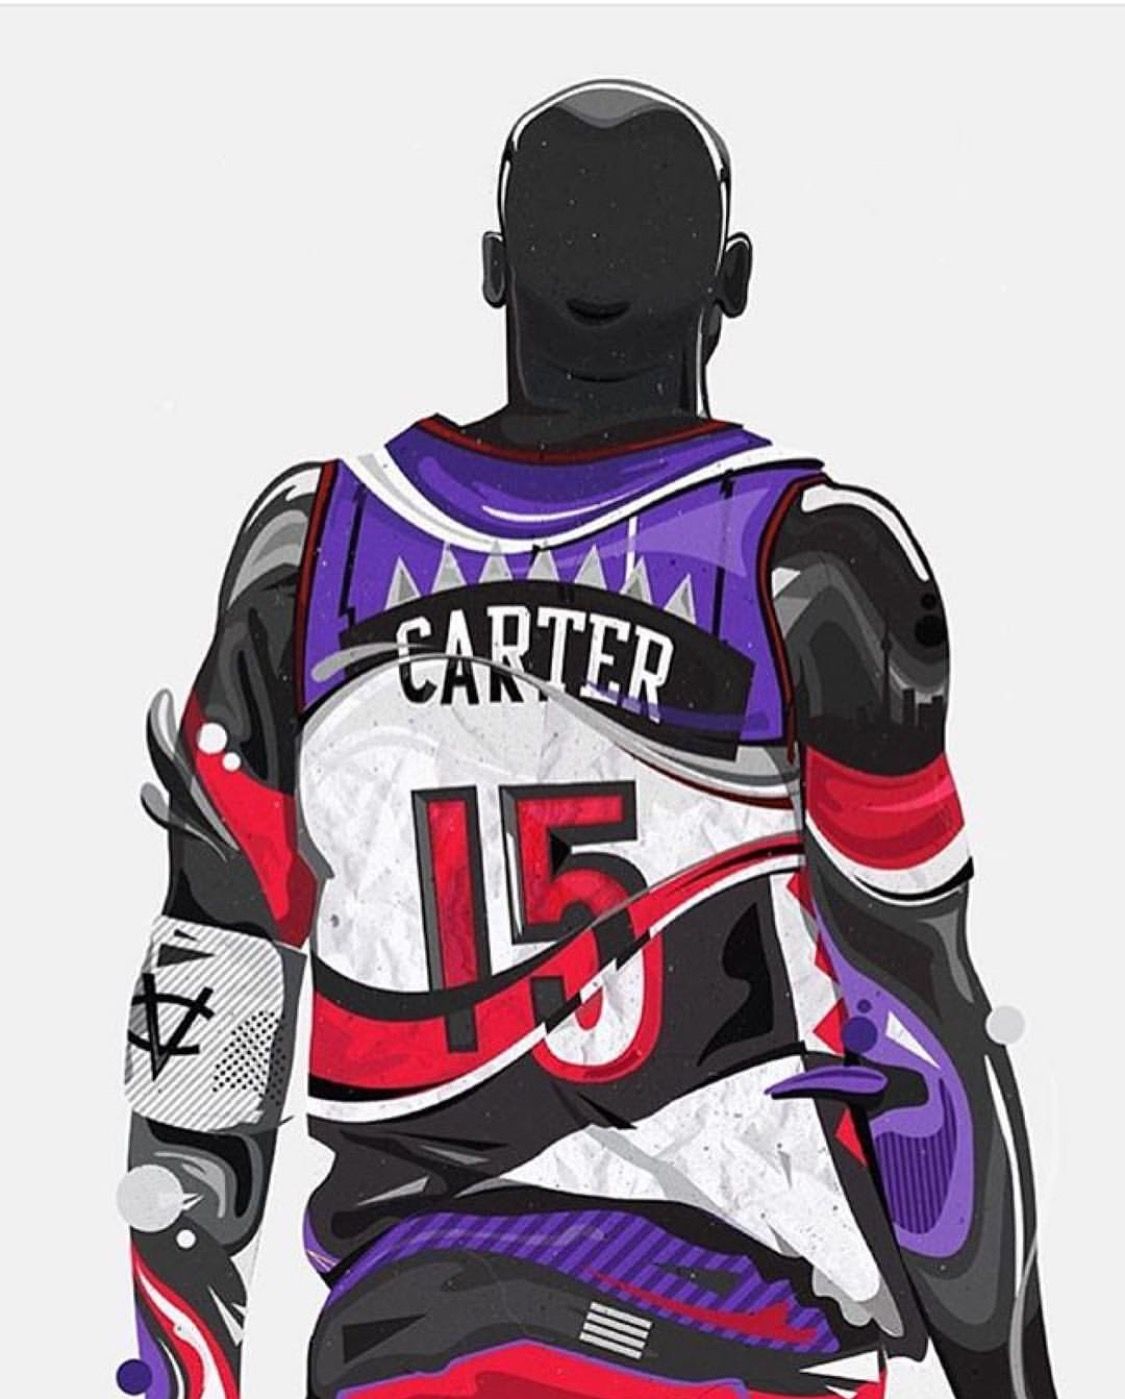 Vince Carter Hoopers Basketball Playoffs Nba Wallpaper